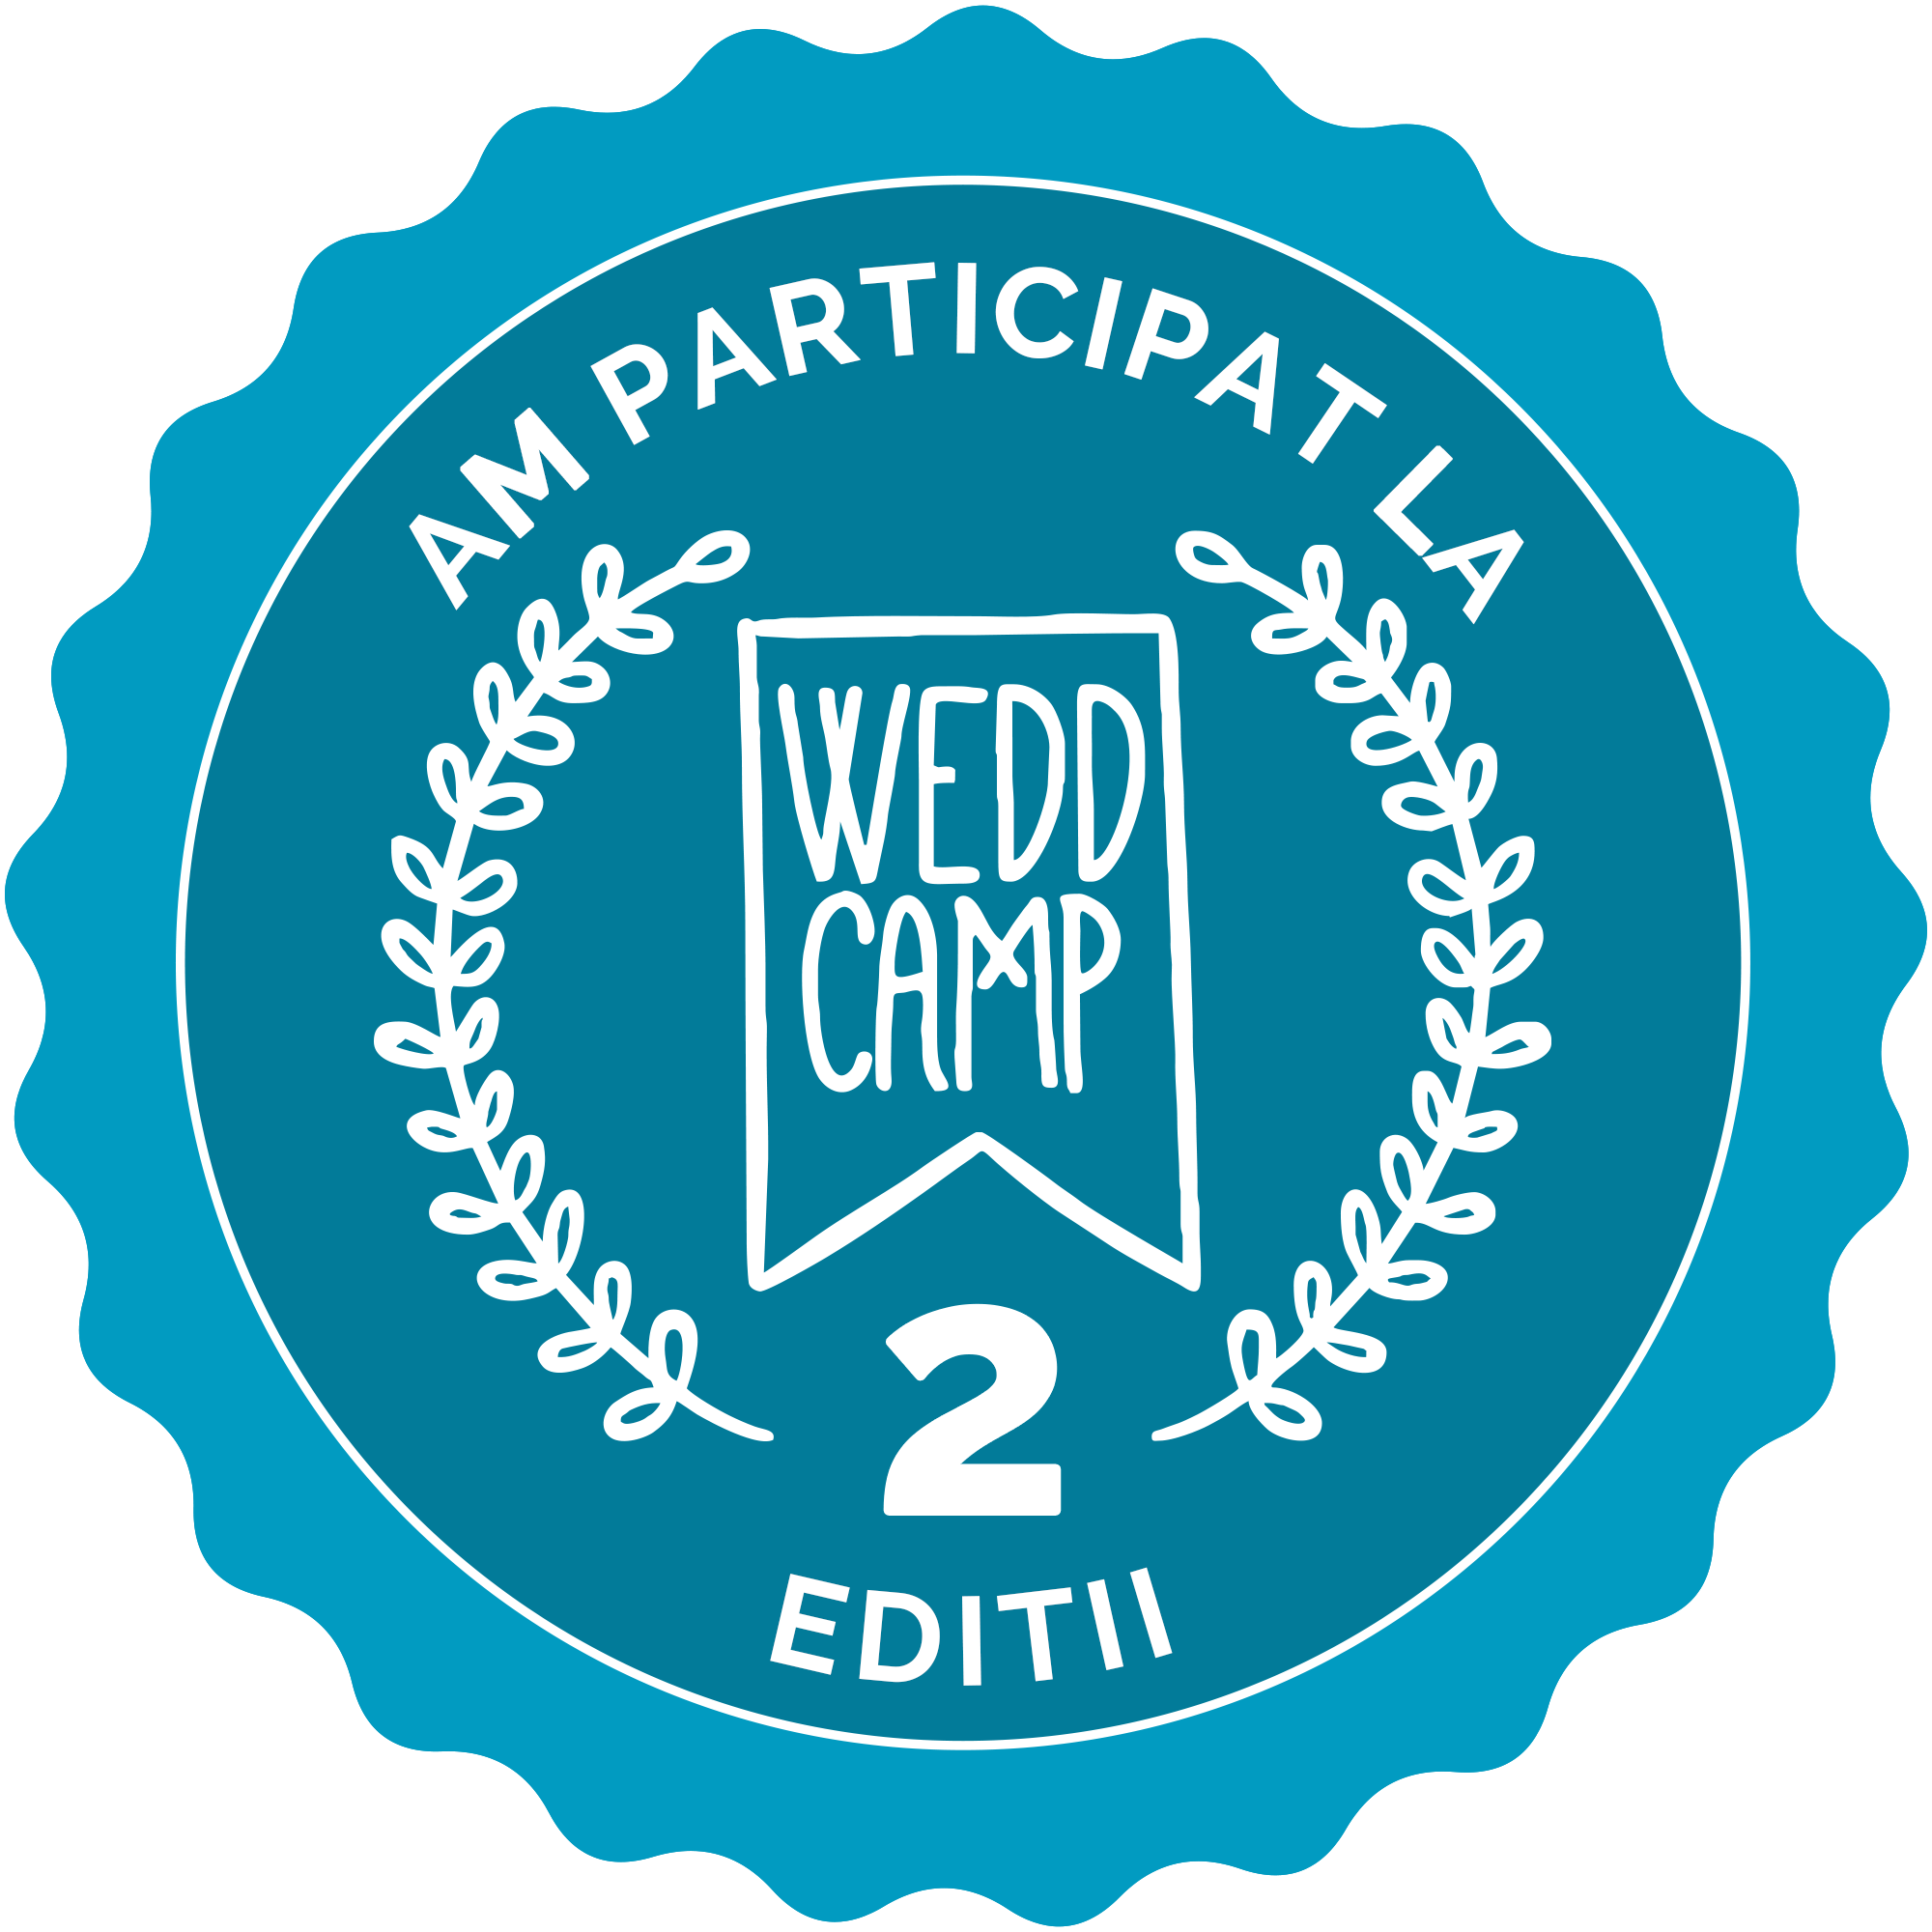 participant la WEDDCAMP